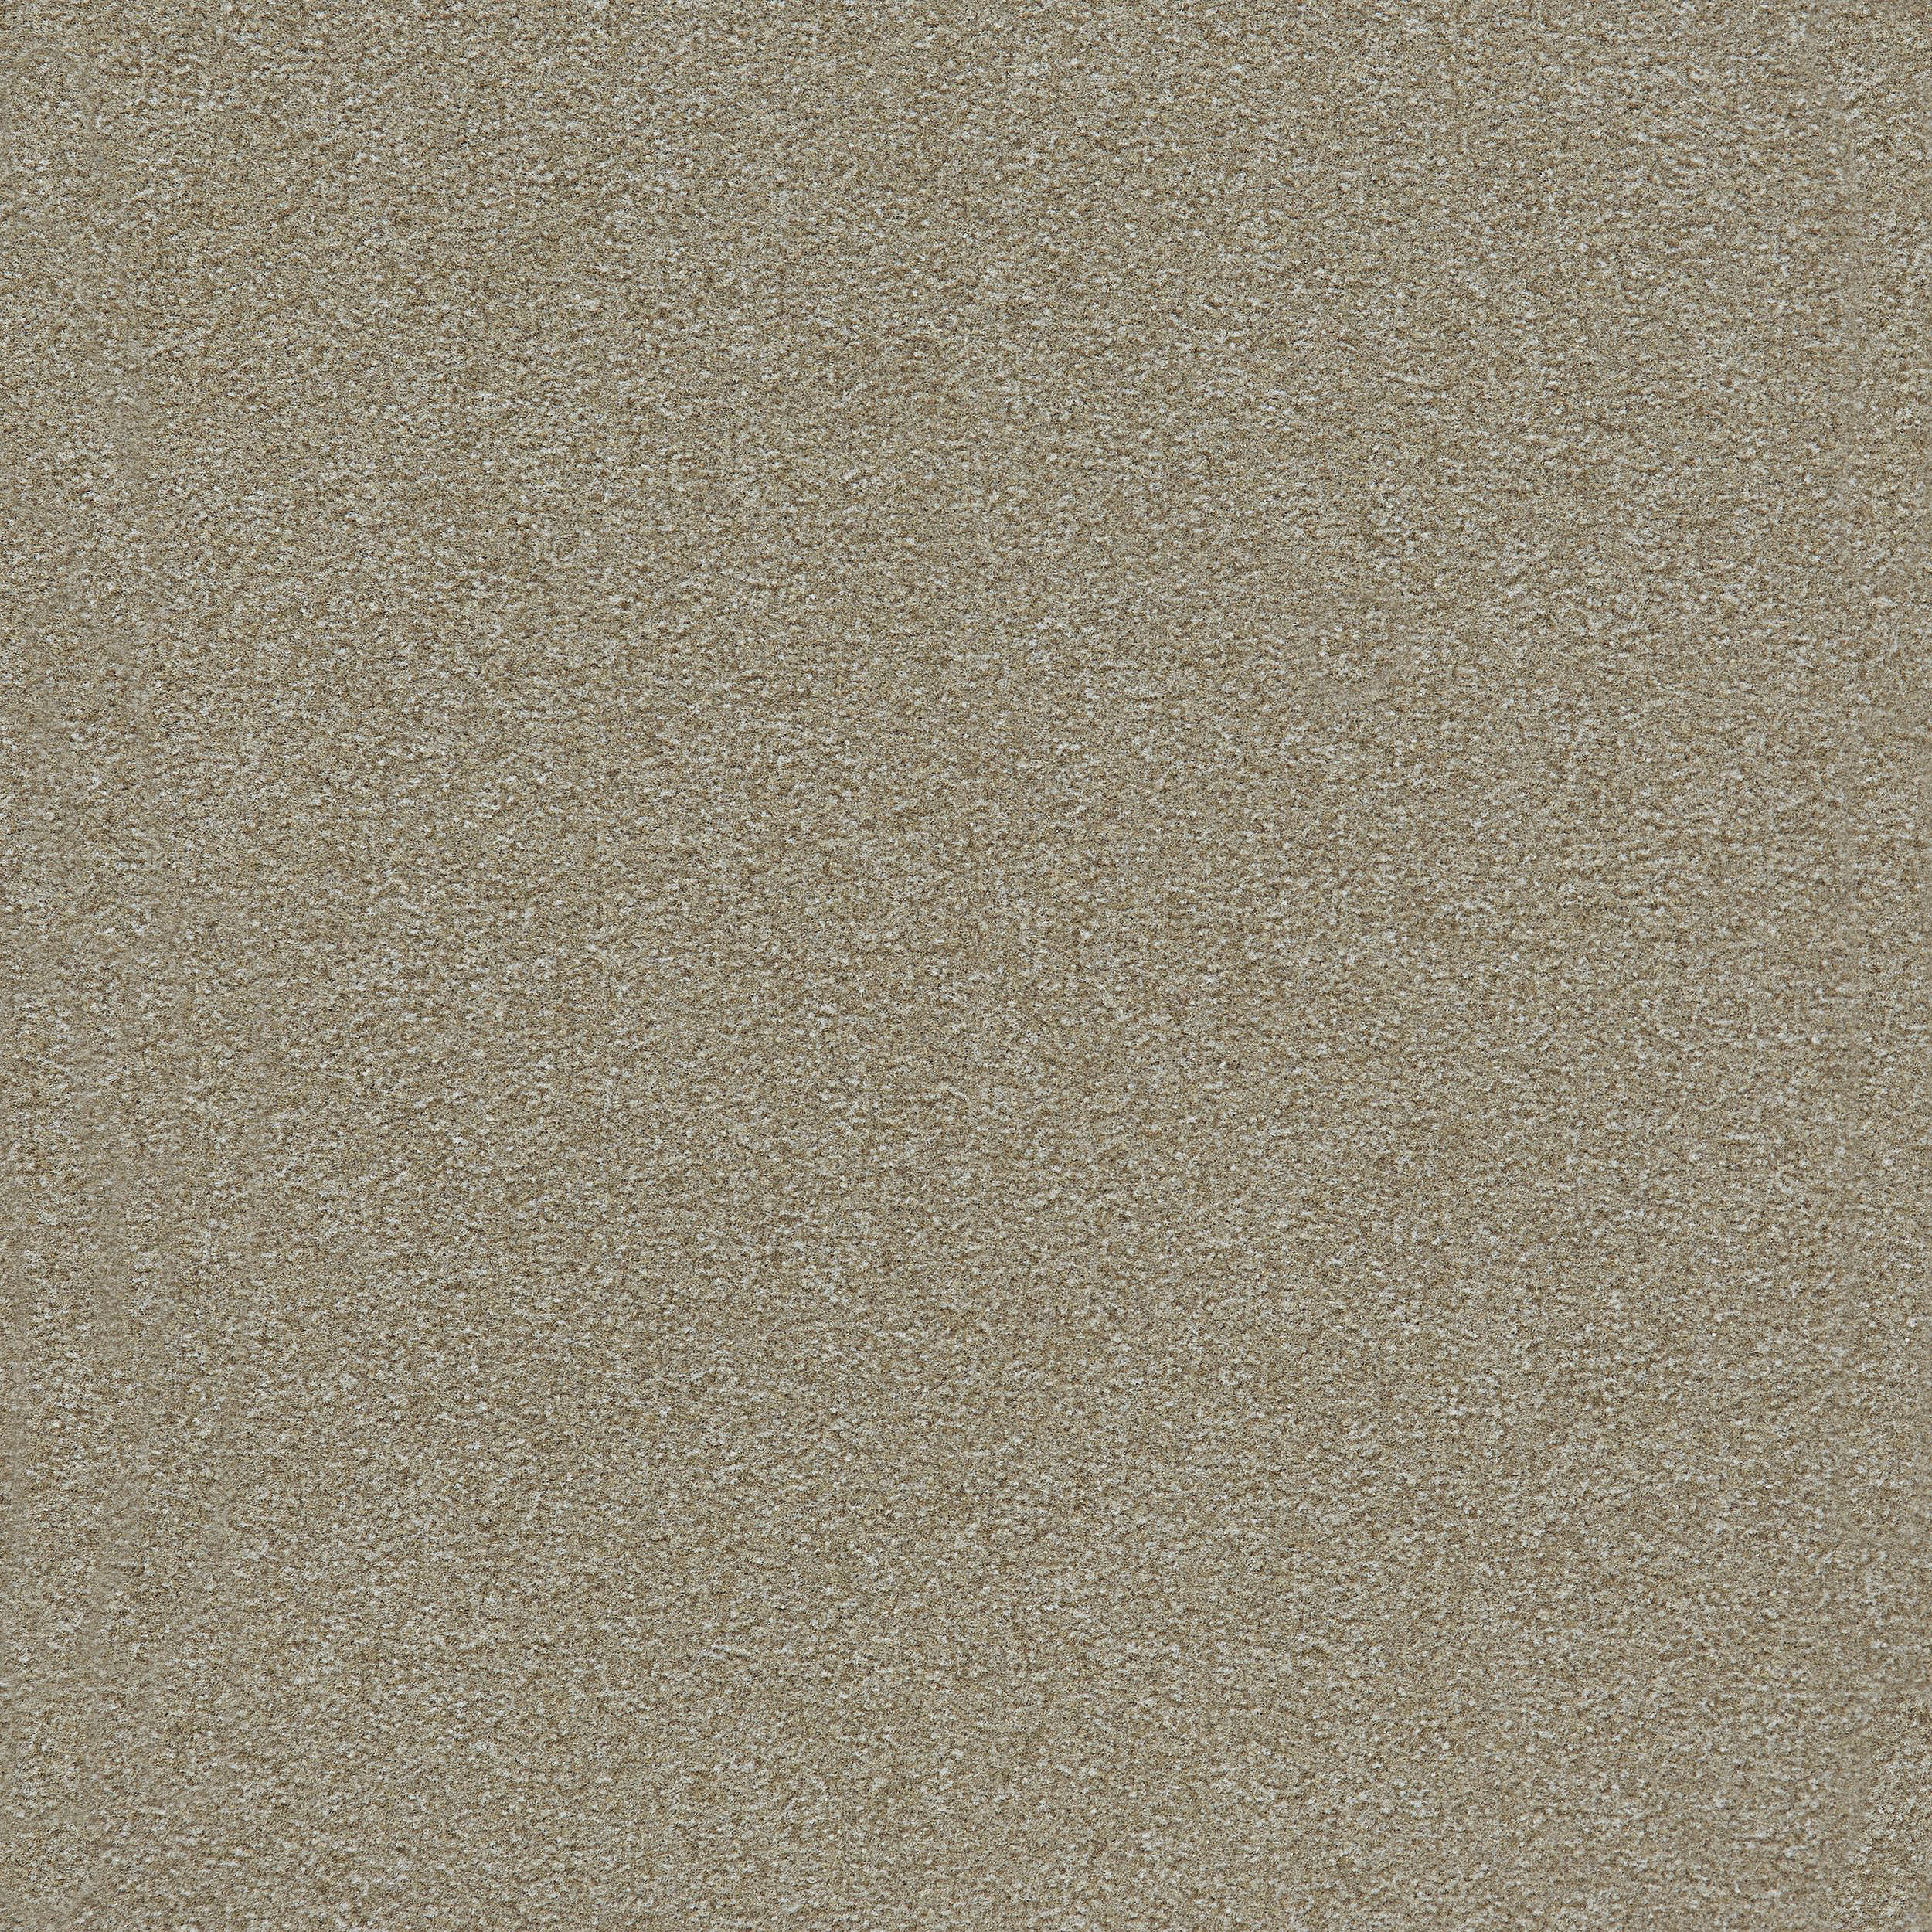 Heuga 725 Carpet Tile In Oyster número de imagen 7